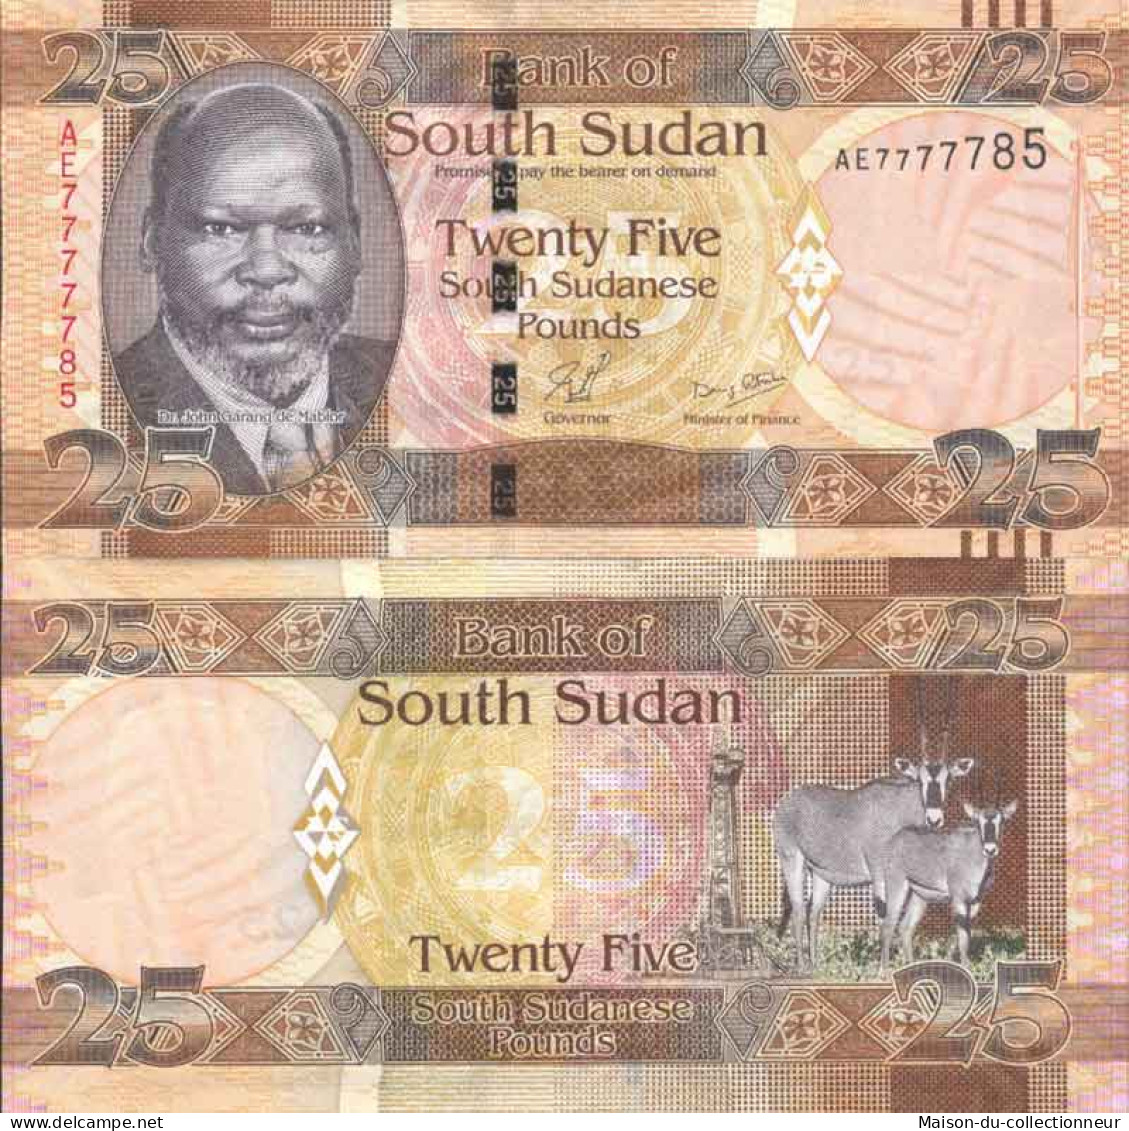 Billet De Banque Collection Soudan Du Sud - PK N° 8 - 25 Pounds - Südsudan